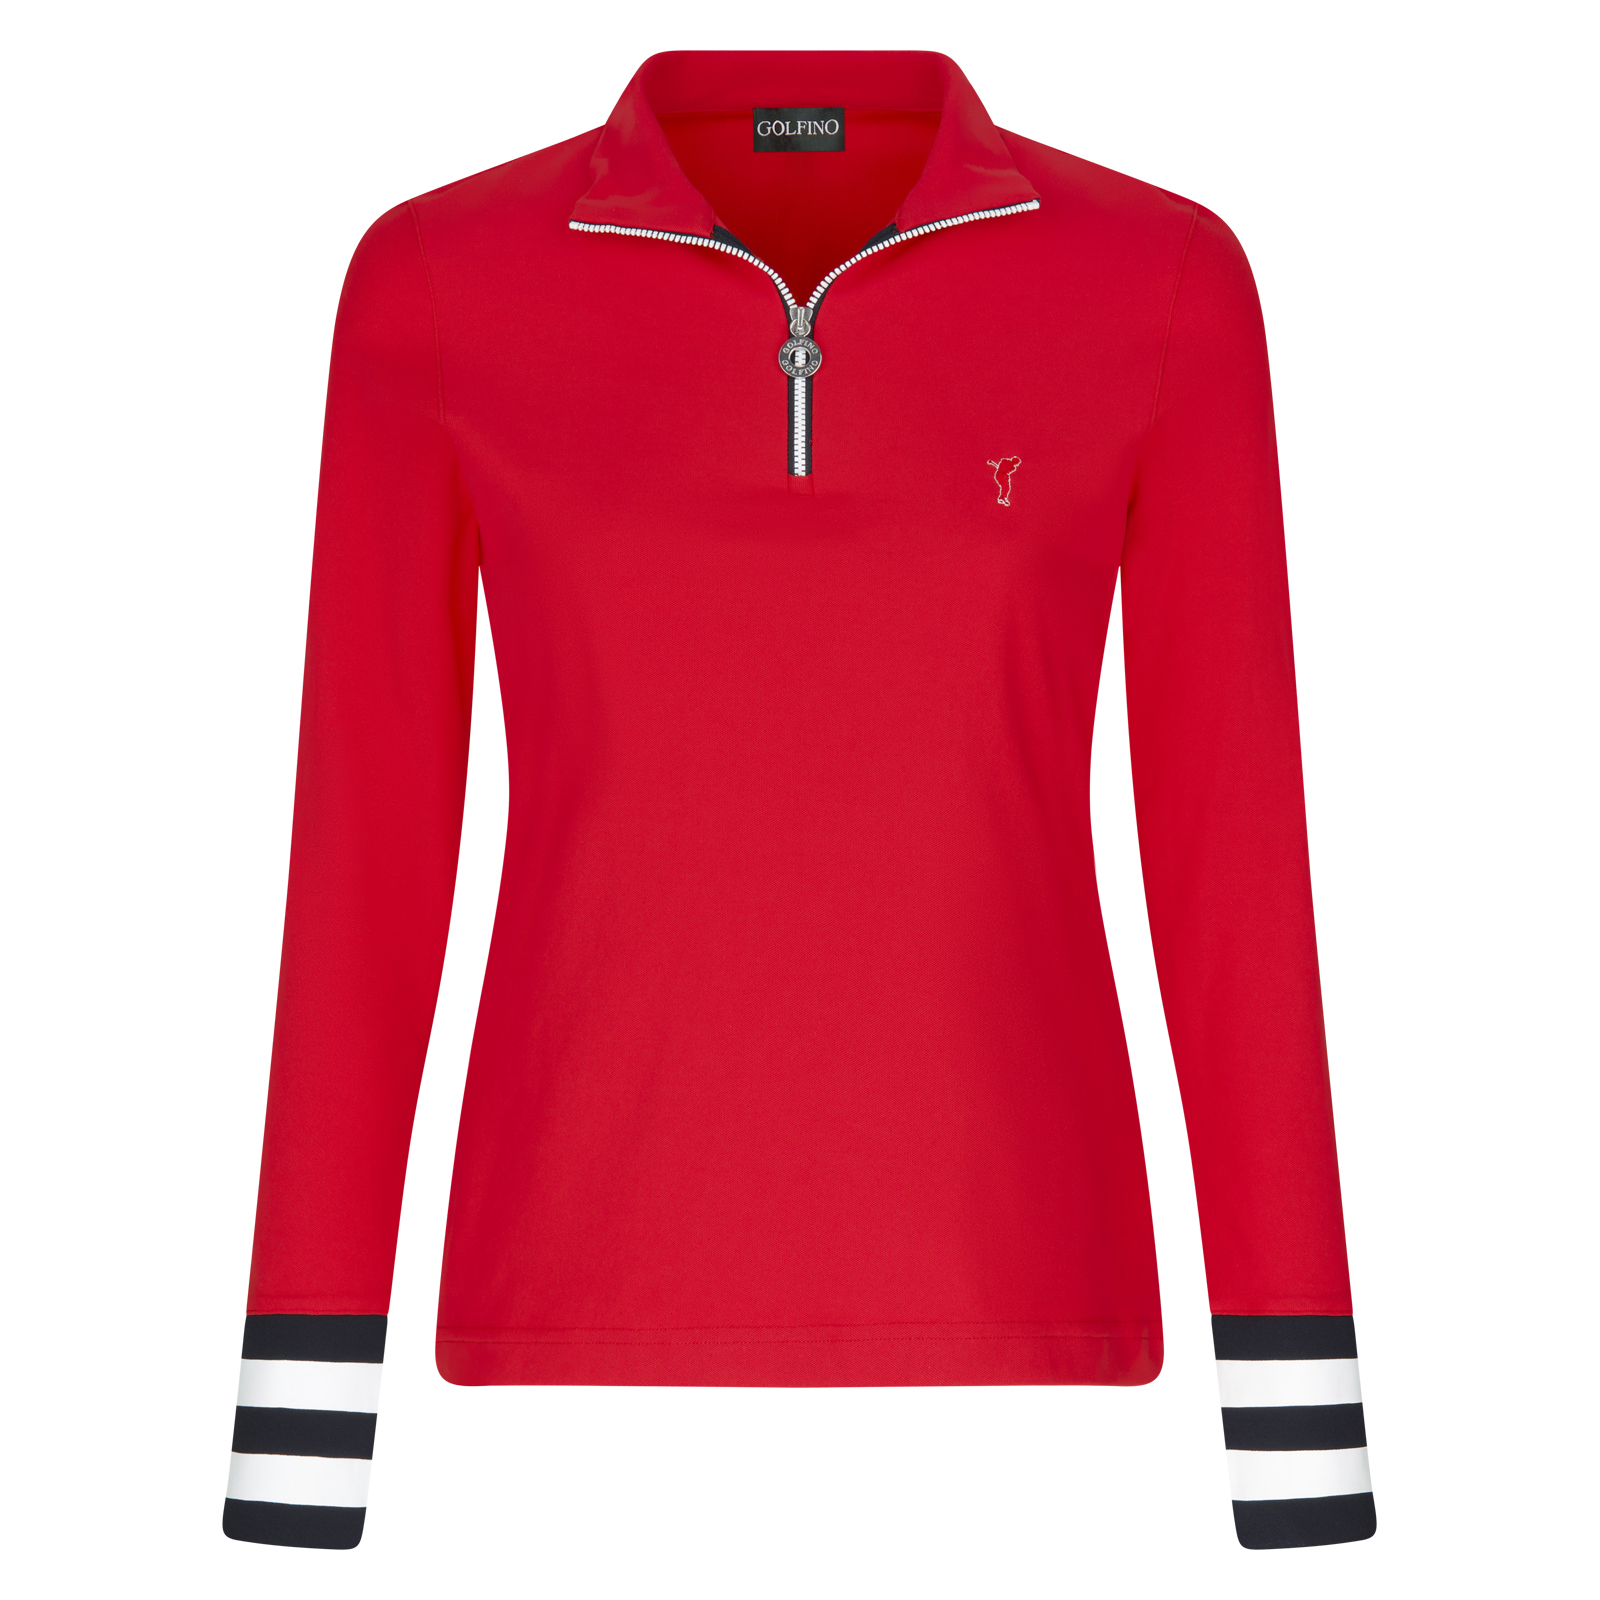 Moderno jersey de golf con control de la humedad y protección contra el frío para mujer